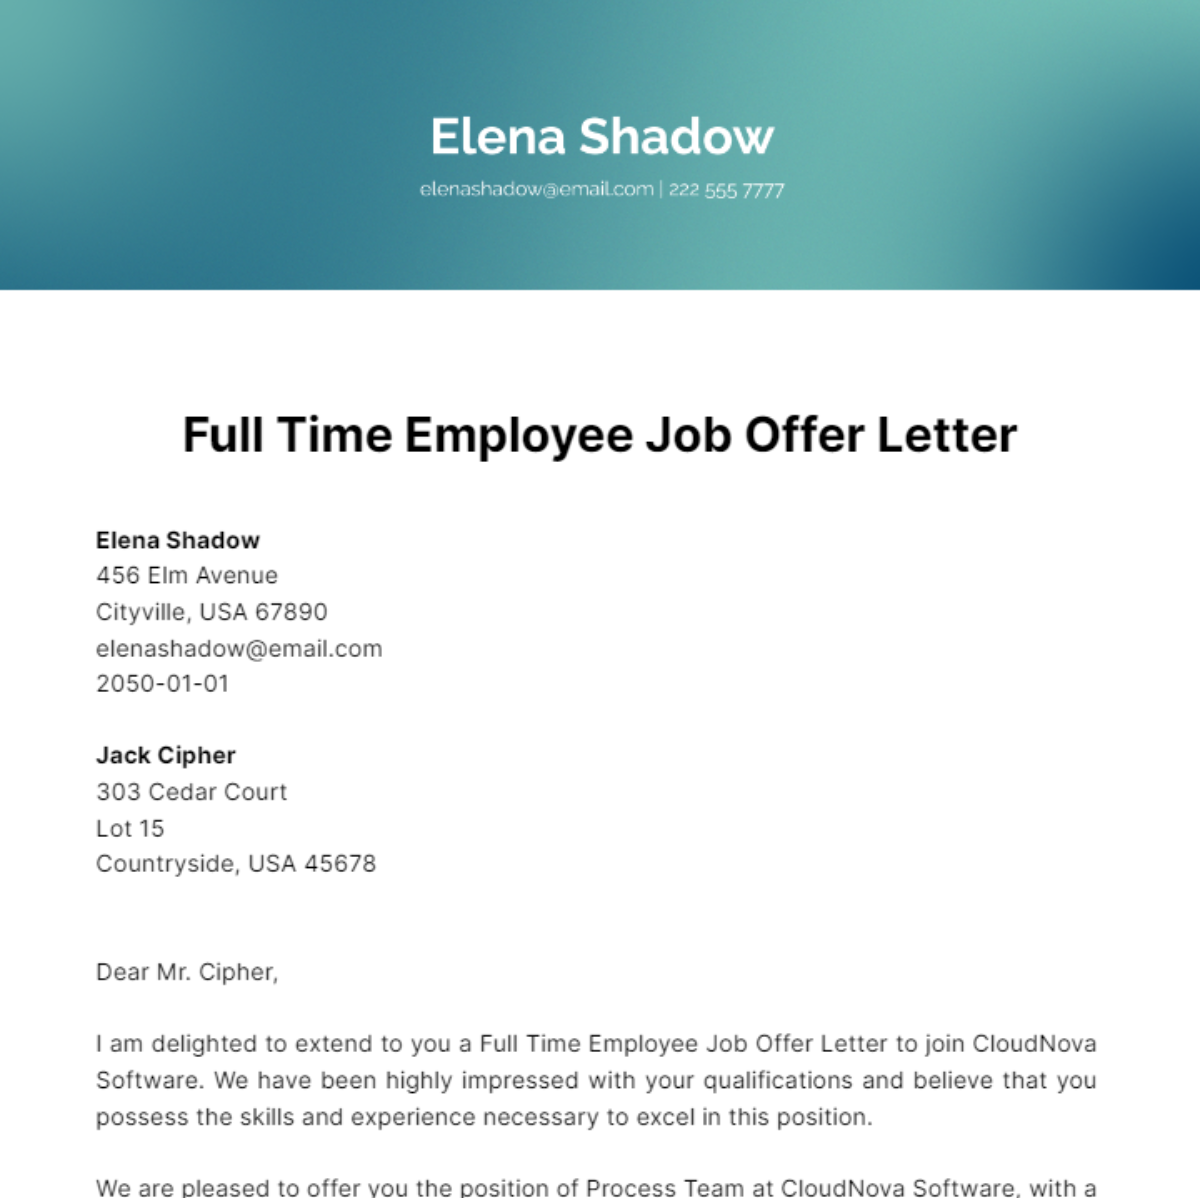 Full Time Employee Job Offer Letter Template